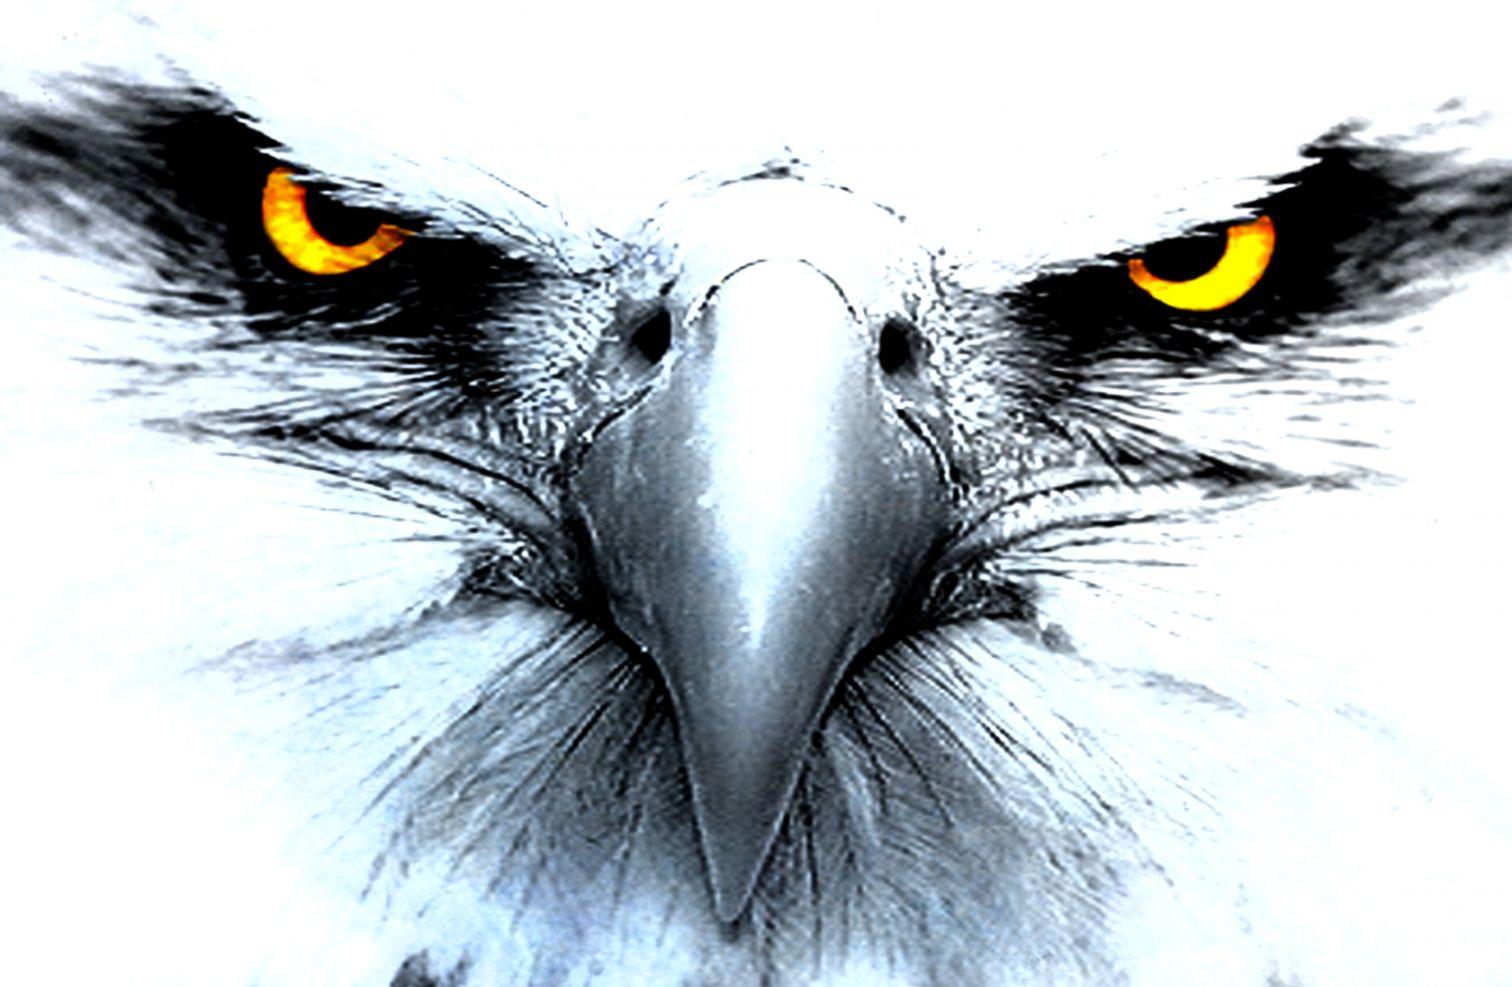 eyes of eagle 5e